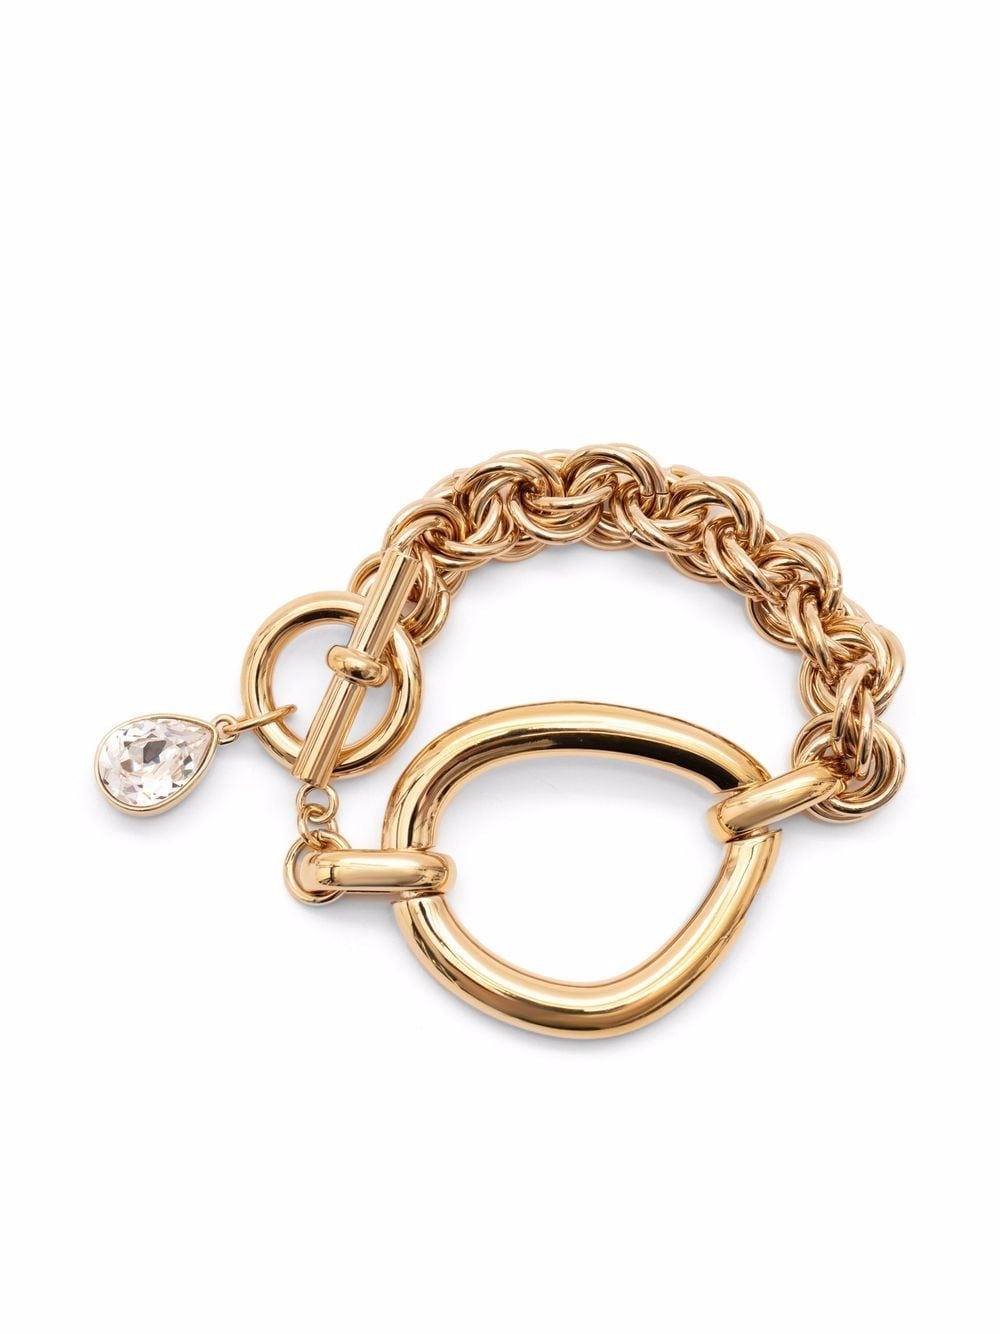 crystal-embellished chain link bracelet - 1